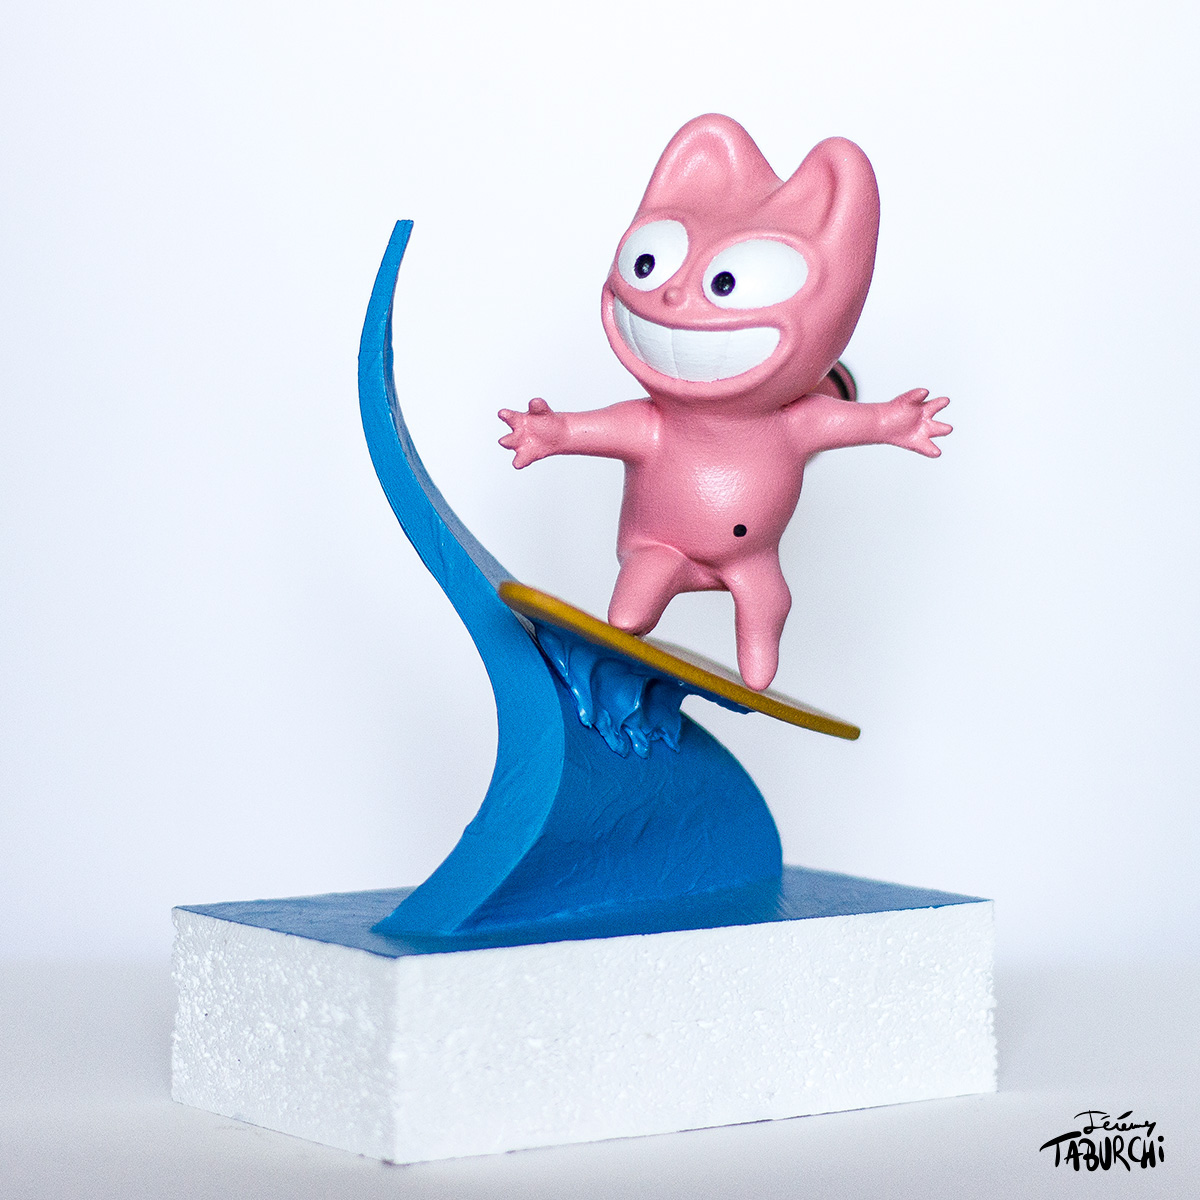 Taburchi Chat Rose pink cat sculpture 3d printing 3D 3d art 3d sculpture